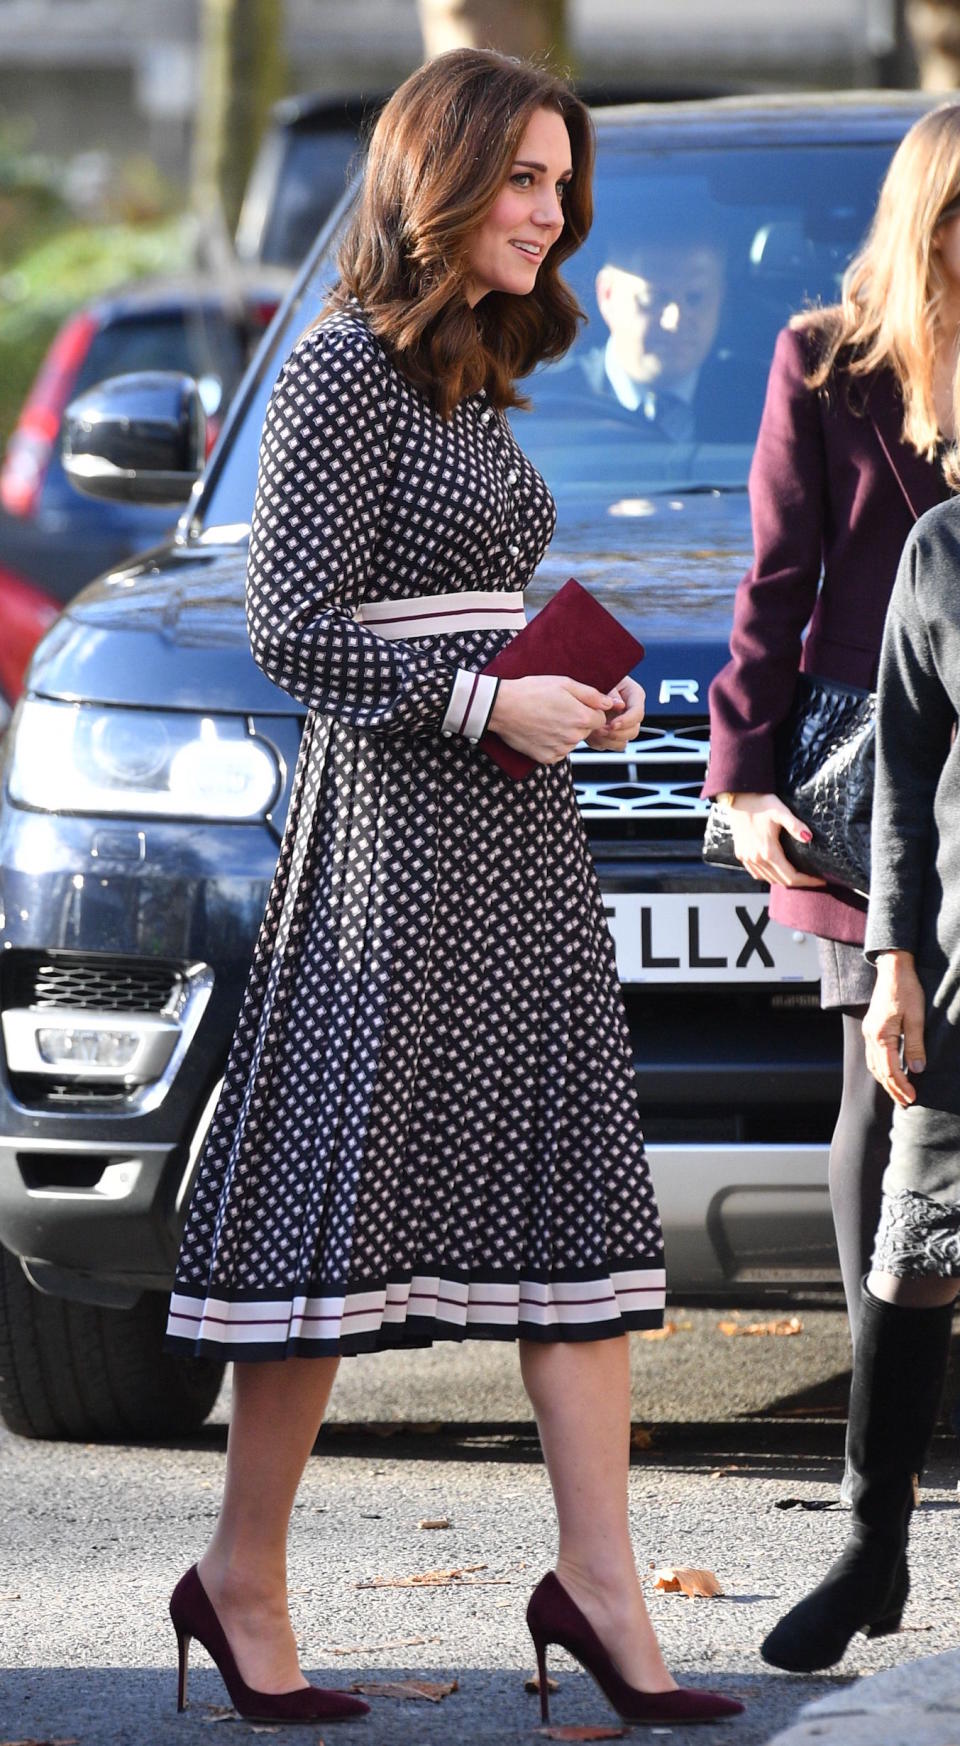 <p>Herzogin Kate erschien bei einem Museumsbesuch in London in einem Midi-Kleid, das mit mit kleinen Vierecken versehen war. Unter dem Gummizug an der Taille zeichnete sich deutlich das wachsende Babybäuchlein ab. (Bild: Rex Features) </p>